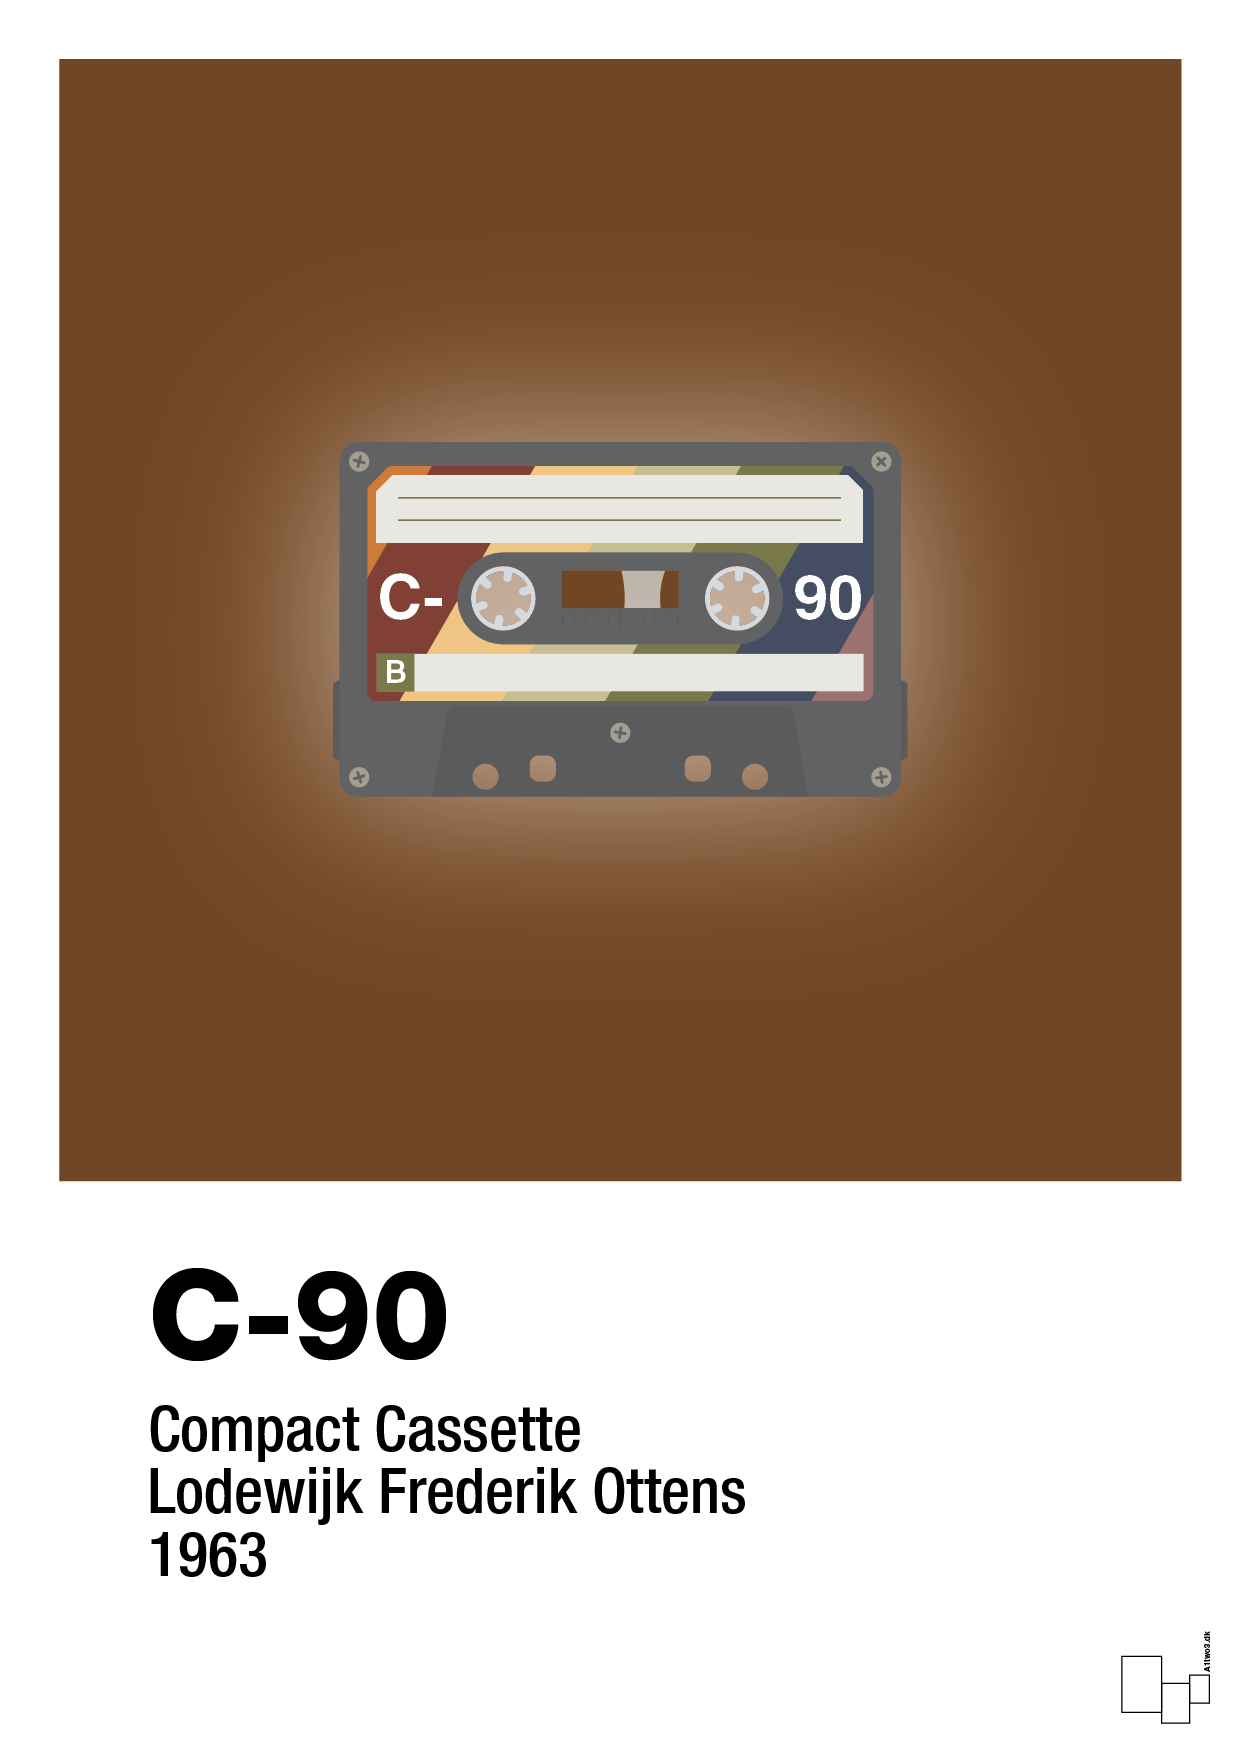 kassettebånd c-90 - Plakat med Grafik i Dark Brown